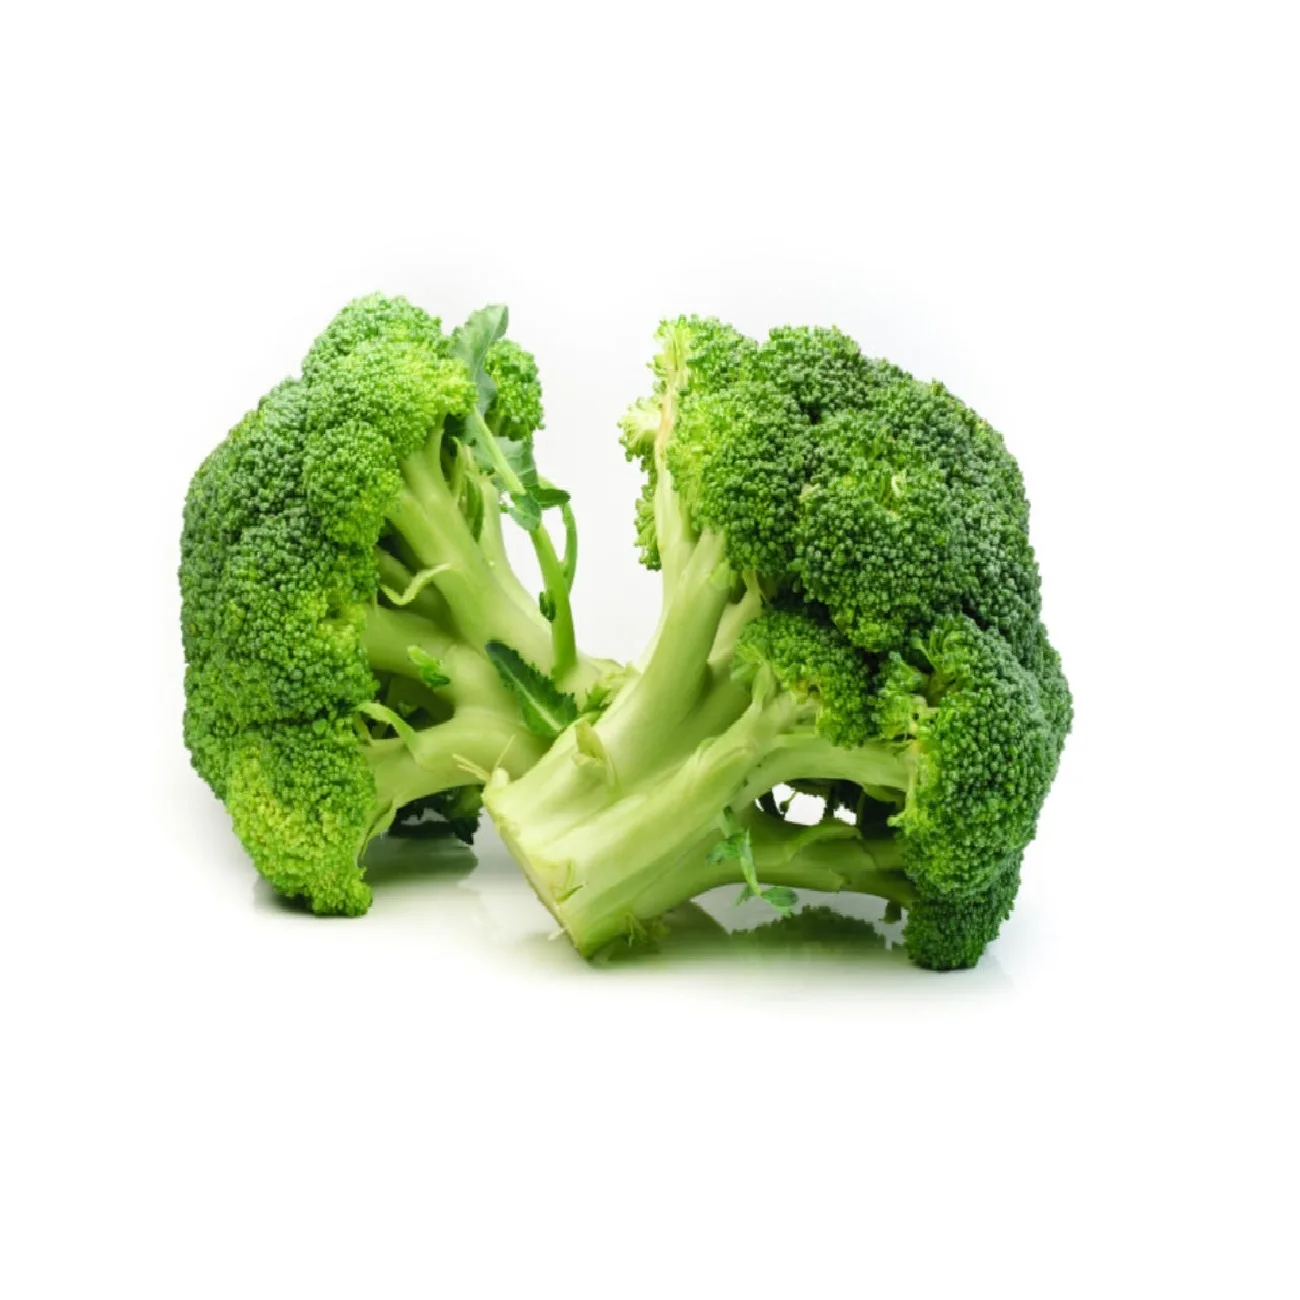 Broccoli freschi in vendita al miglior prezzo e qualità, lattuga iceberg pronta per l'esportazione